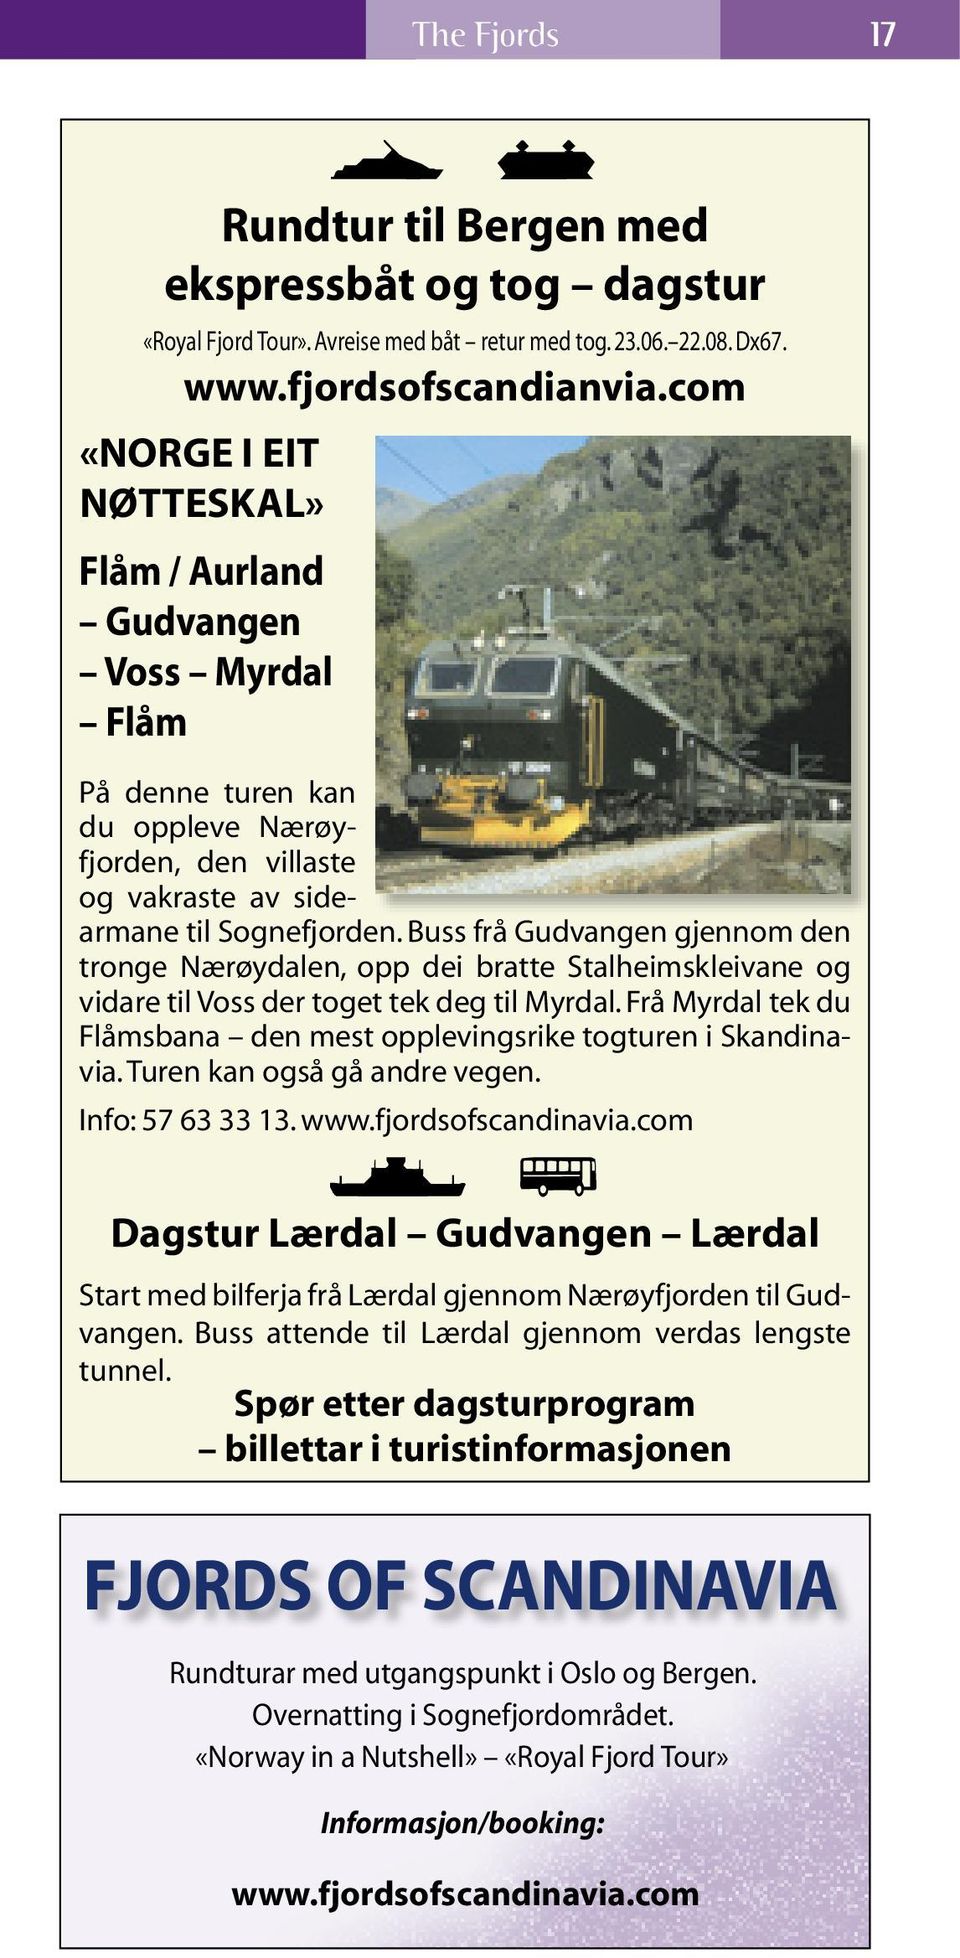 Buss frå Gudvangen gjennom den tronge Nærøy dalen, opp dei bratte Stalheimskleivane og vidare til Voss der toget tek deg til Myrdal.